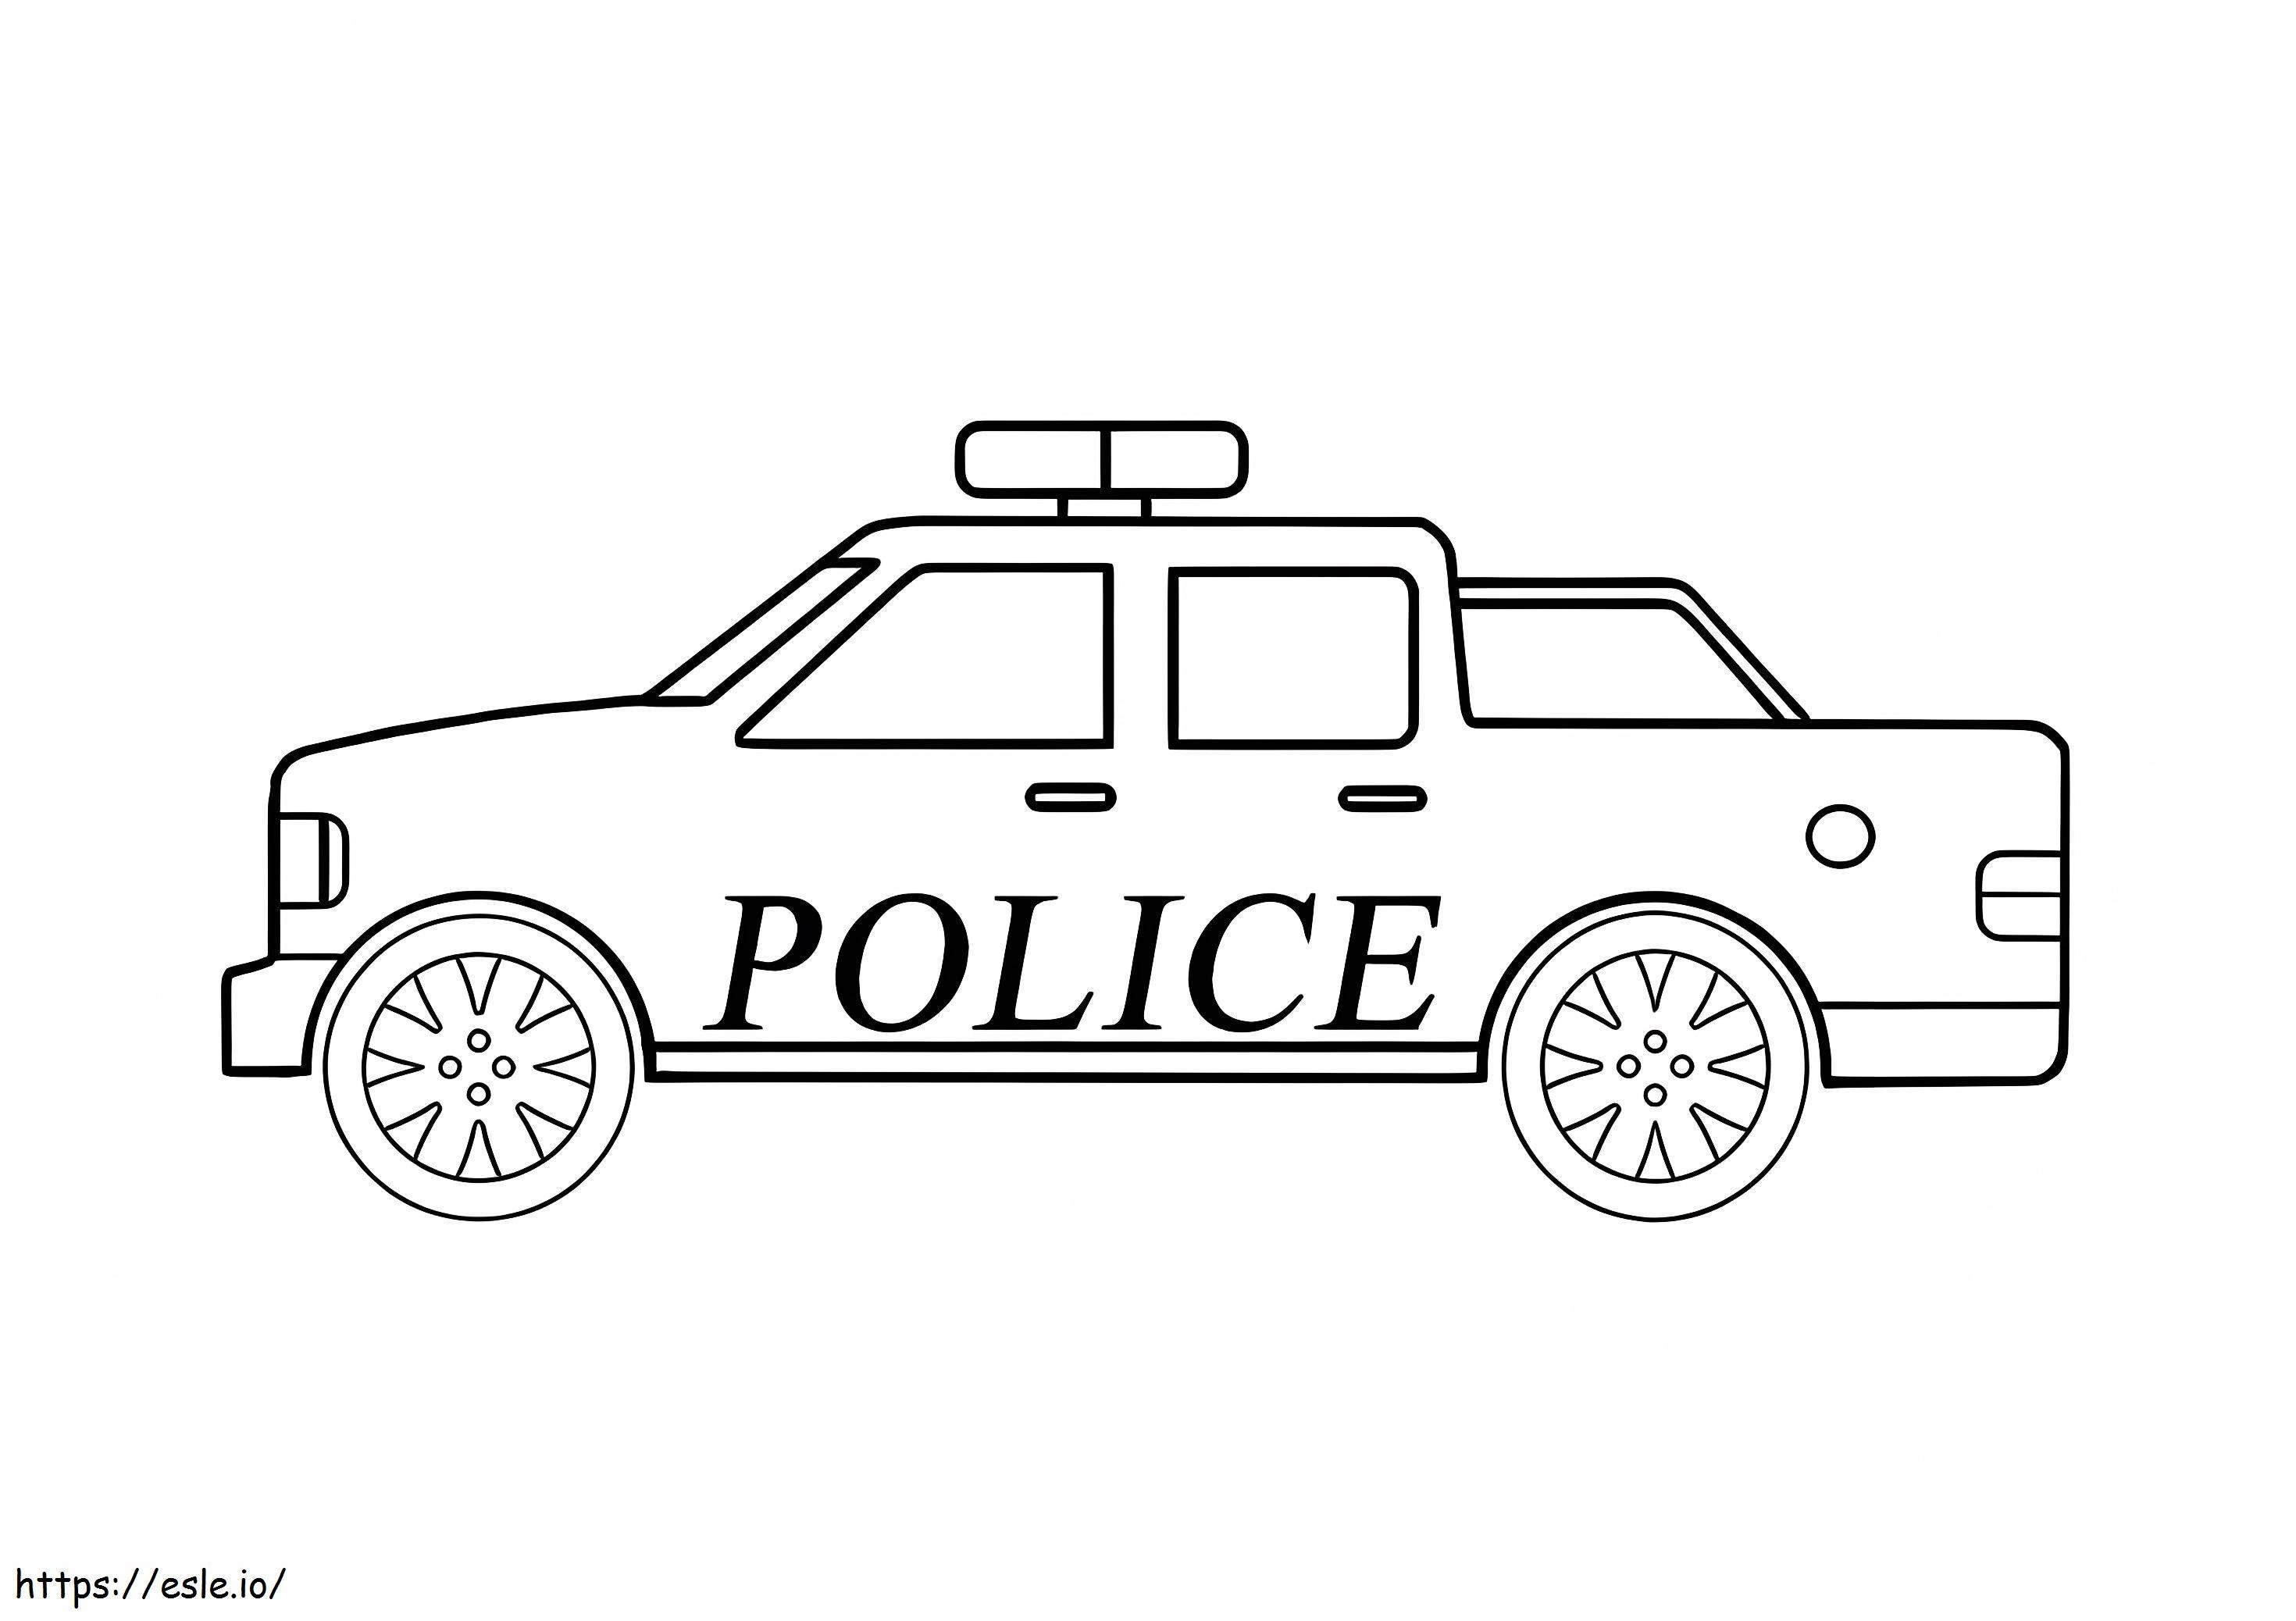 Sehr einfaches Polizeiauto ausmalbilder